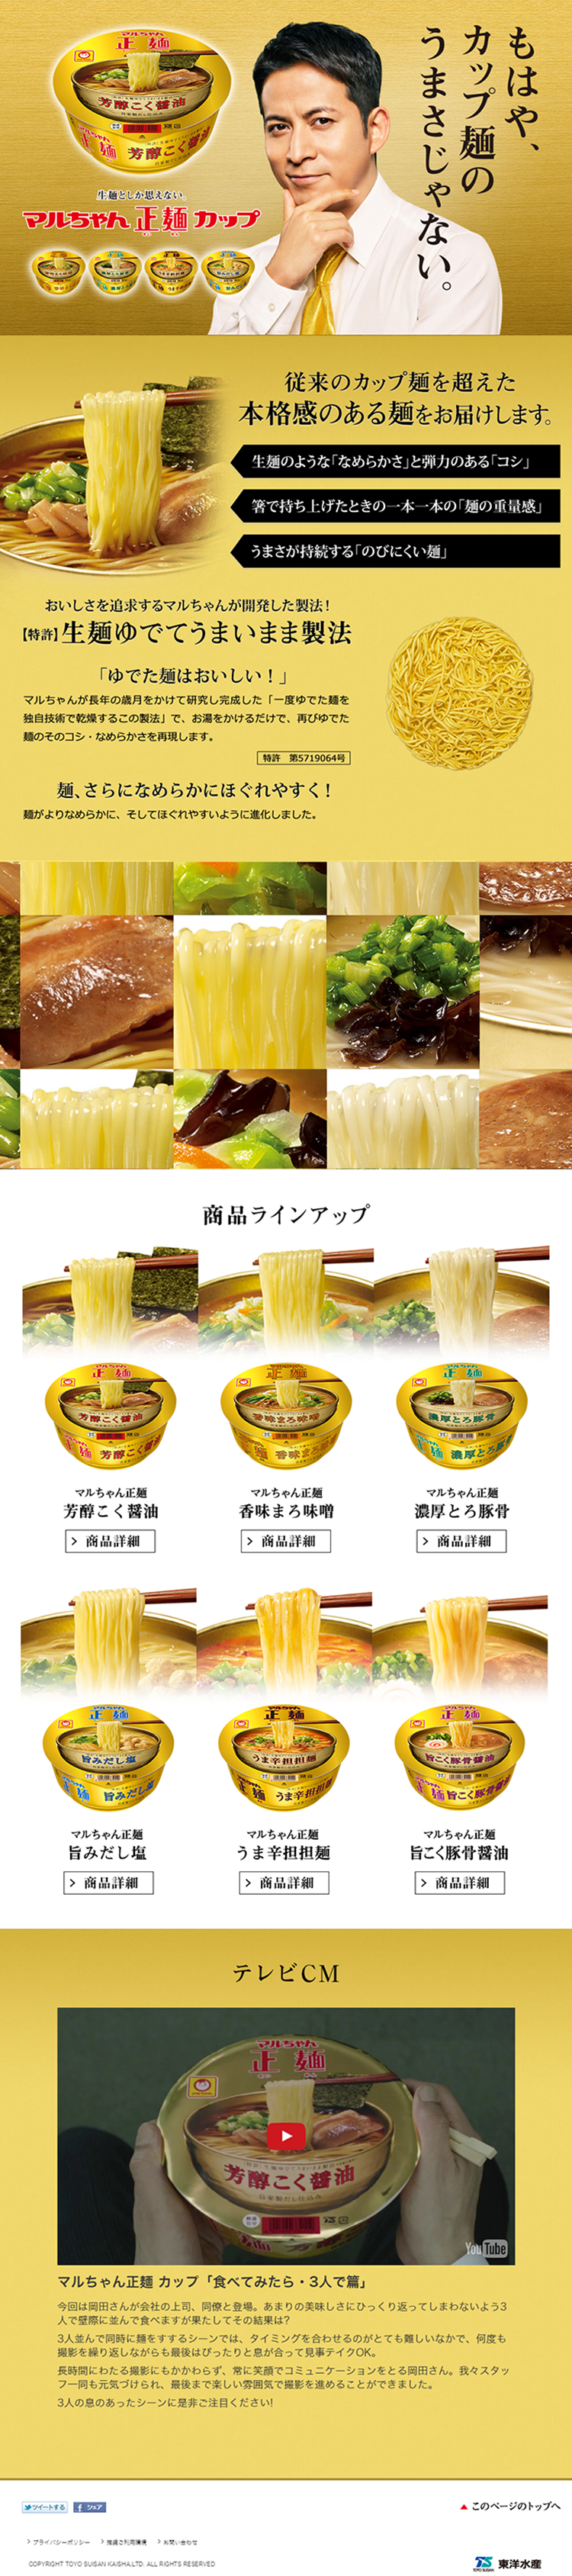 マルちゃん製麺カップ_pc_1